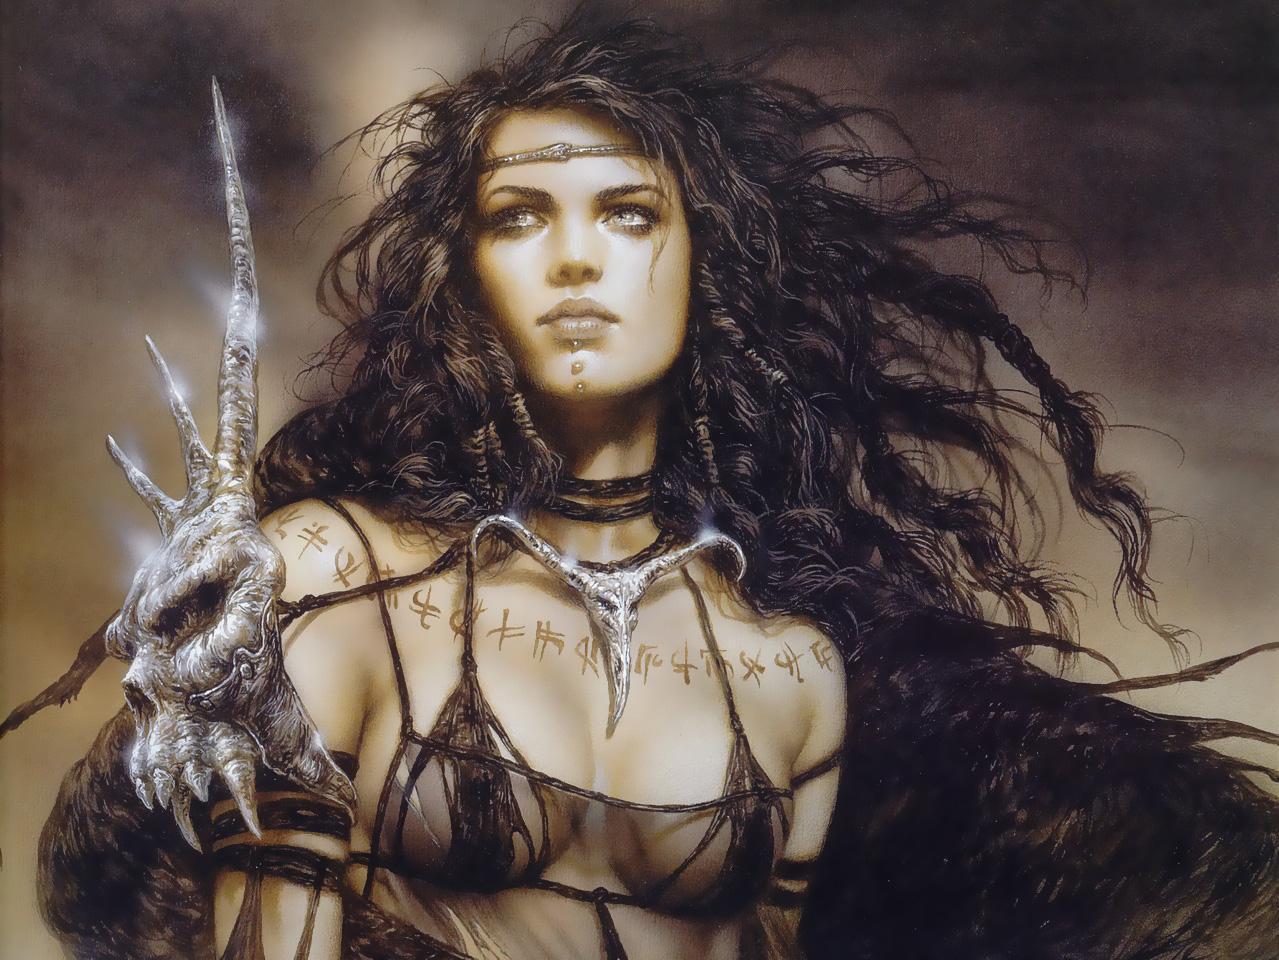 women warrior Luis royo fantasy art